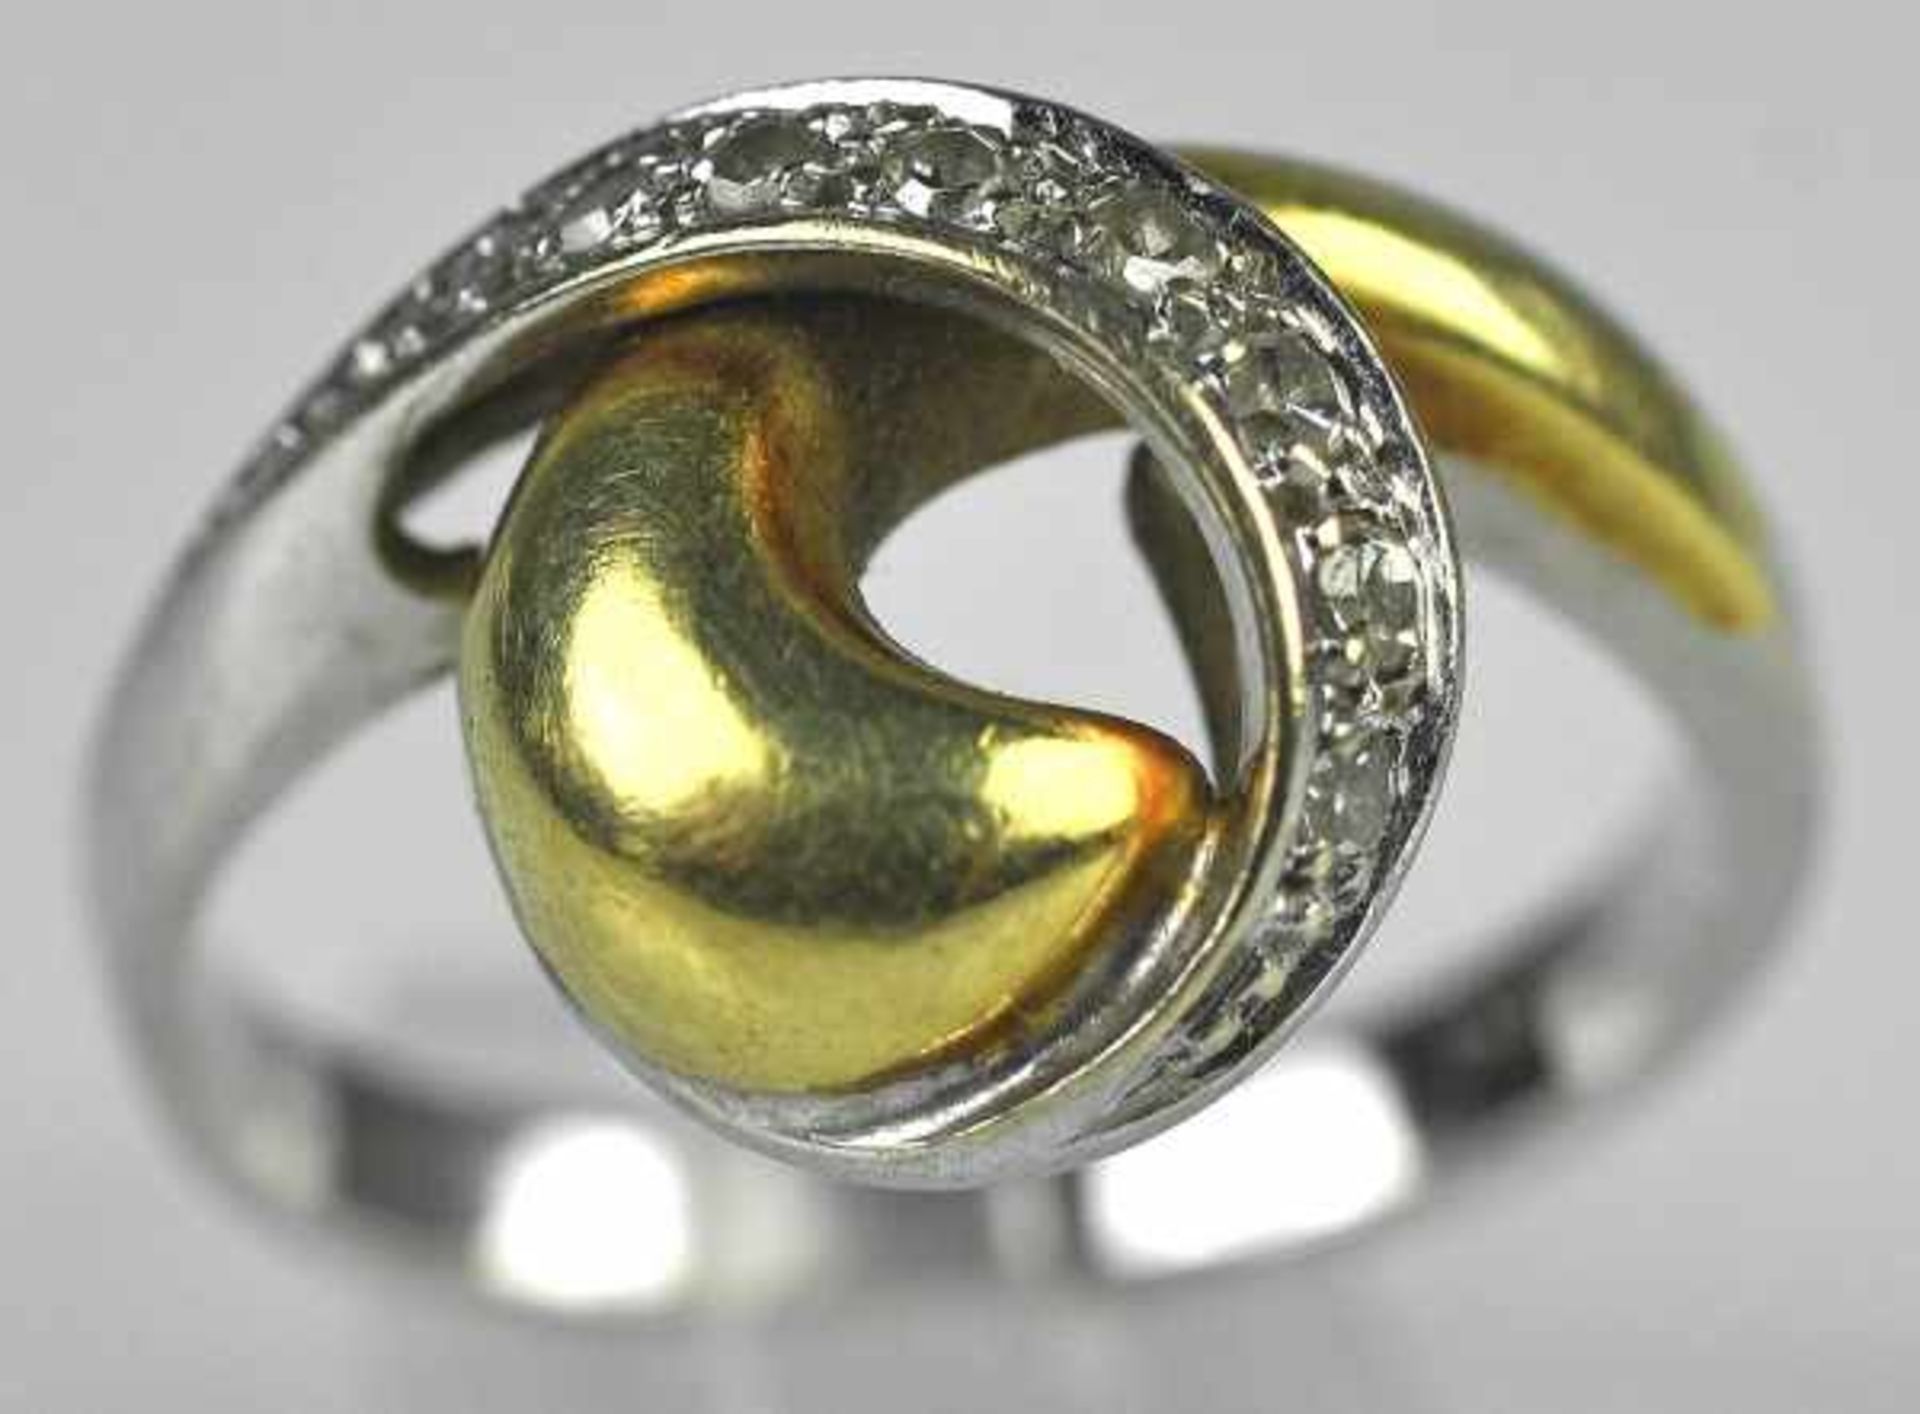 KNOTENRING bicolor, Weißgoldband besetzt mit Diamanten mit poliertem Gelbgoldband, Gold 14ct, 4,56g,